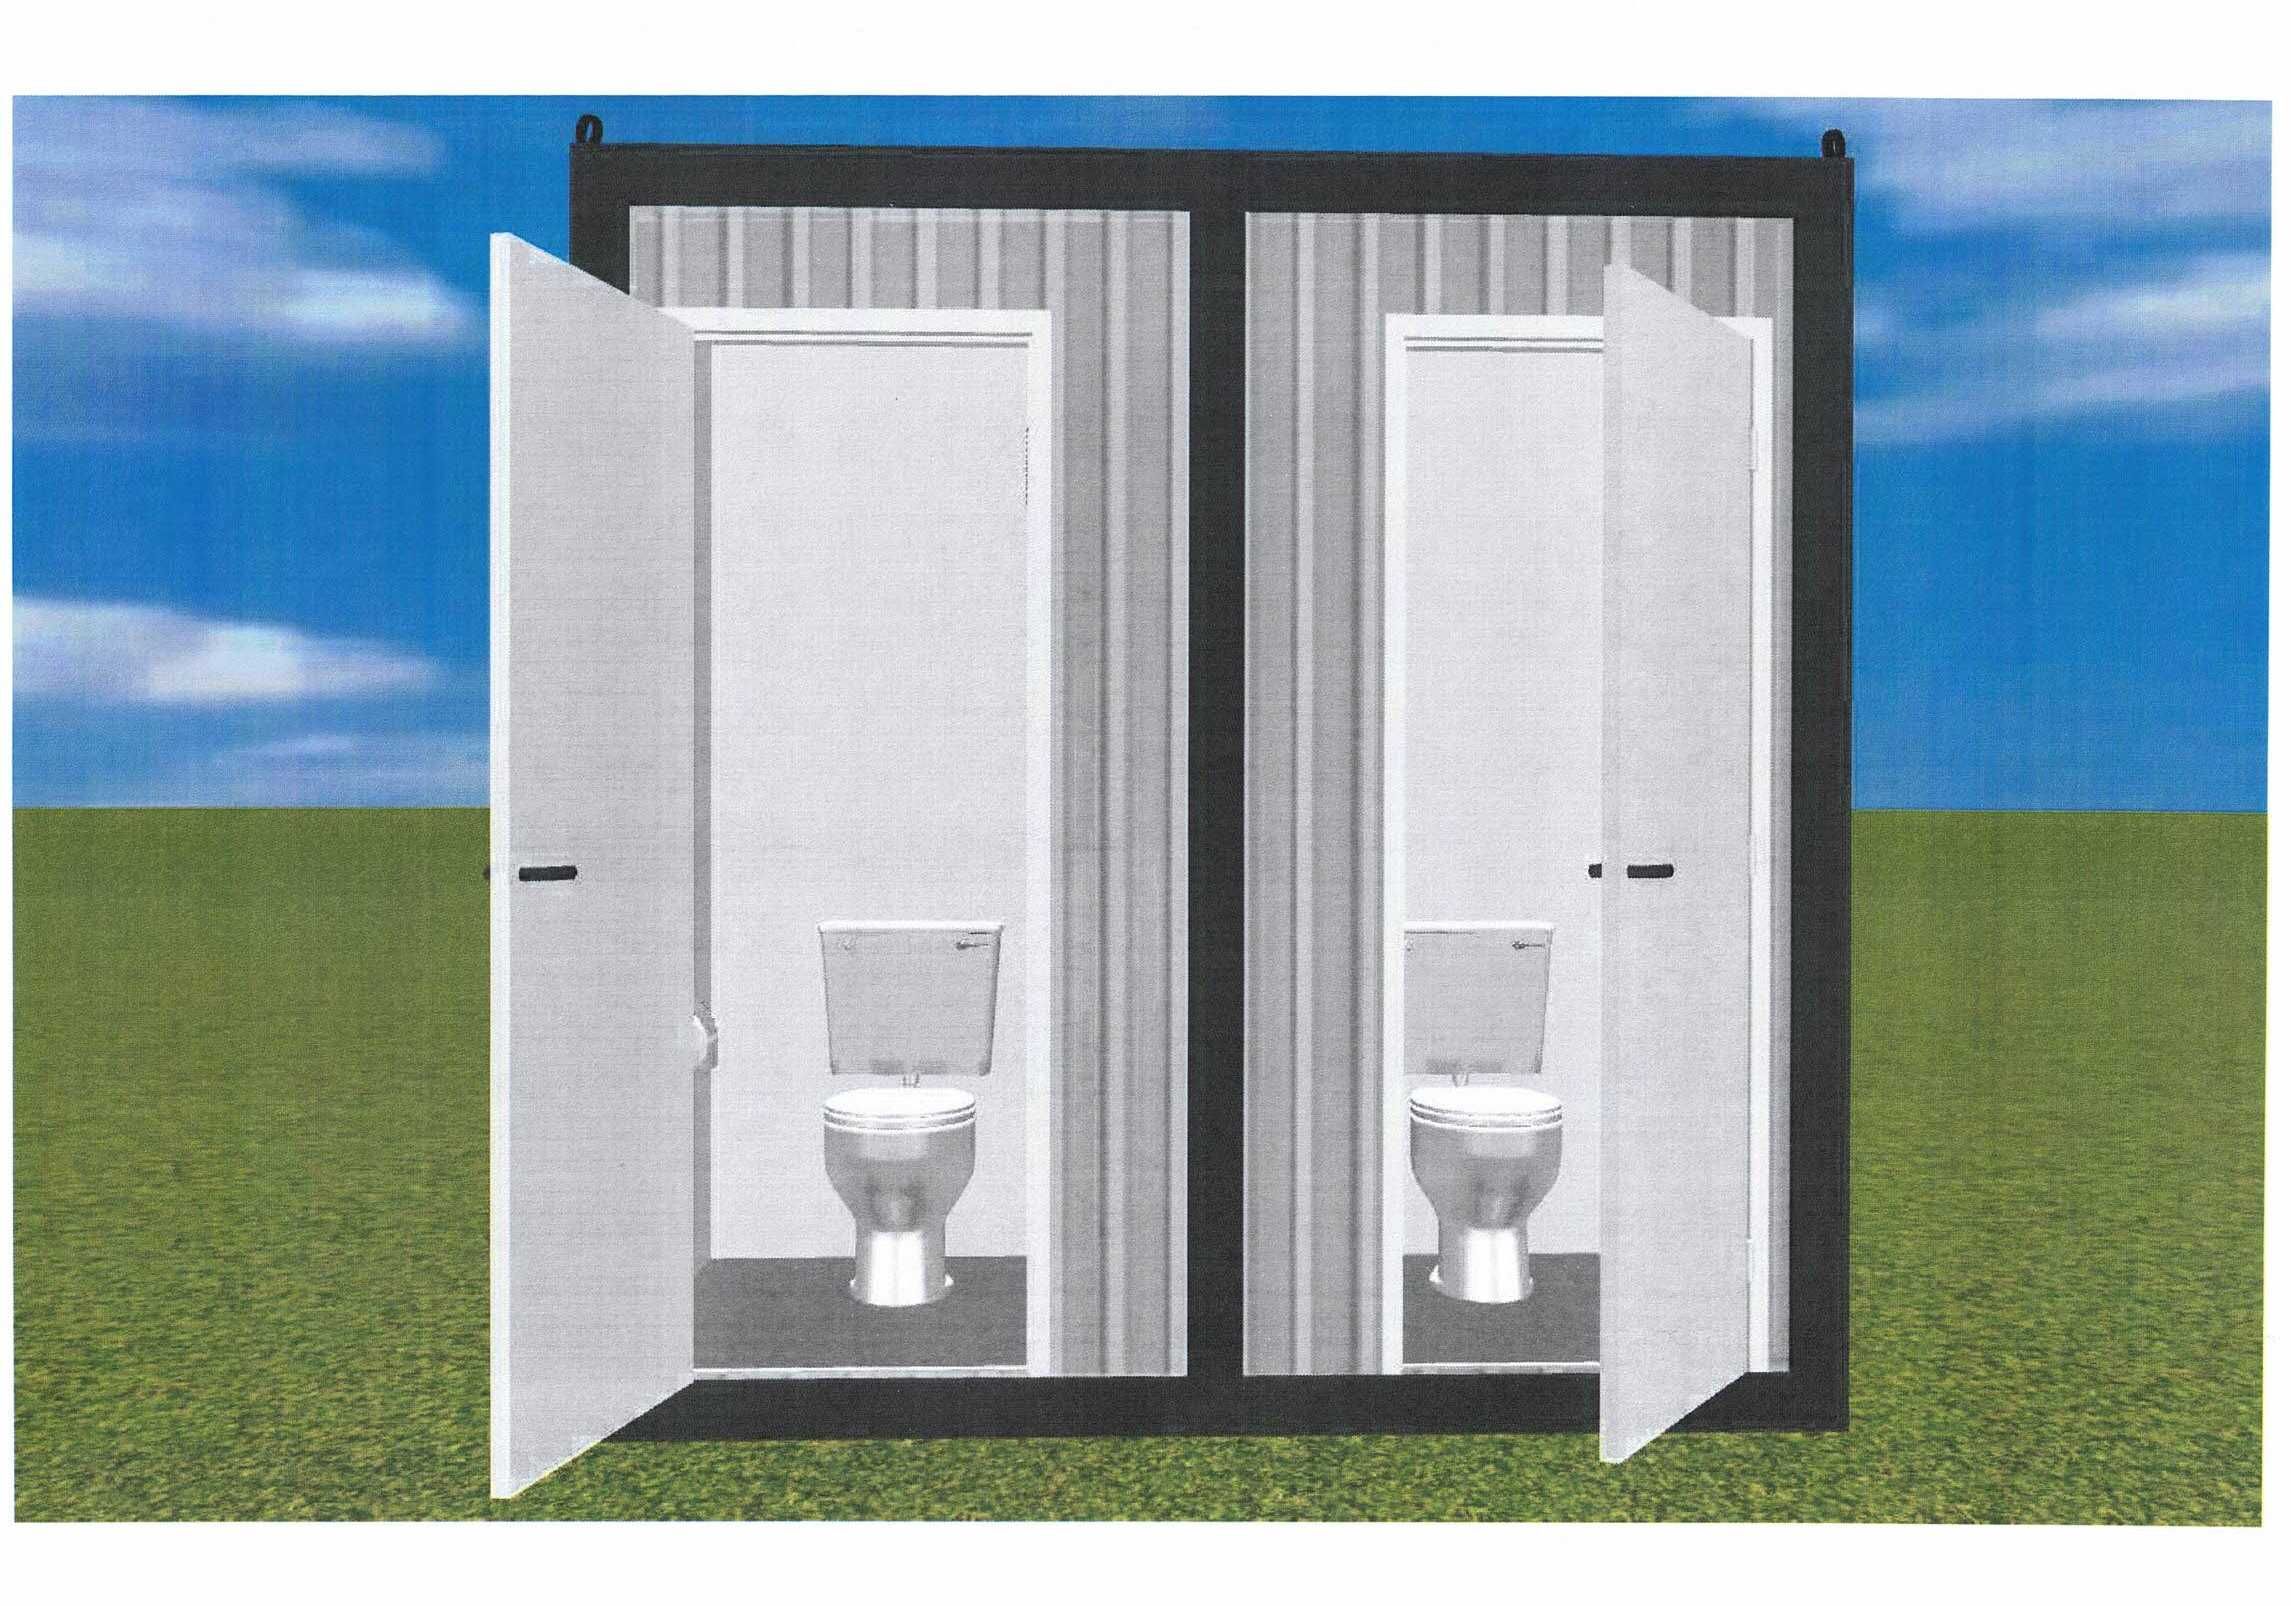 Inchiriere,vanzare toalete ecologice,wc-ri  racordabil,continere